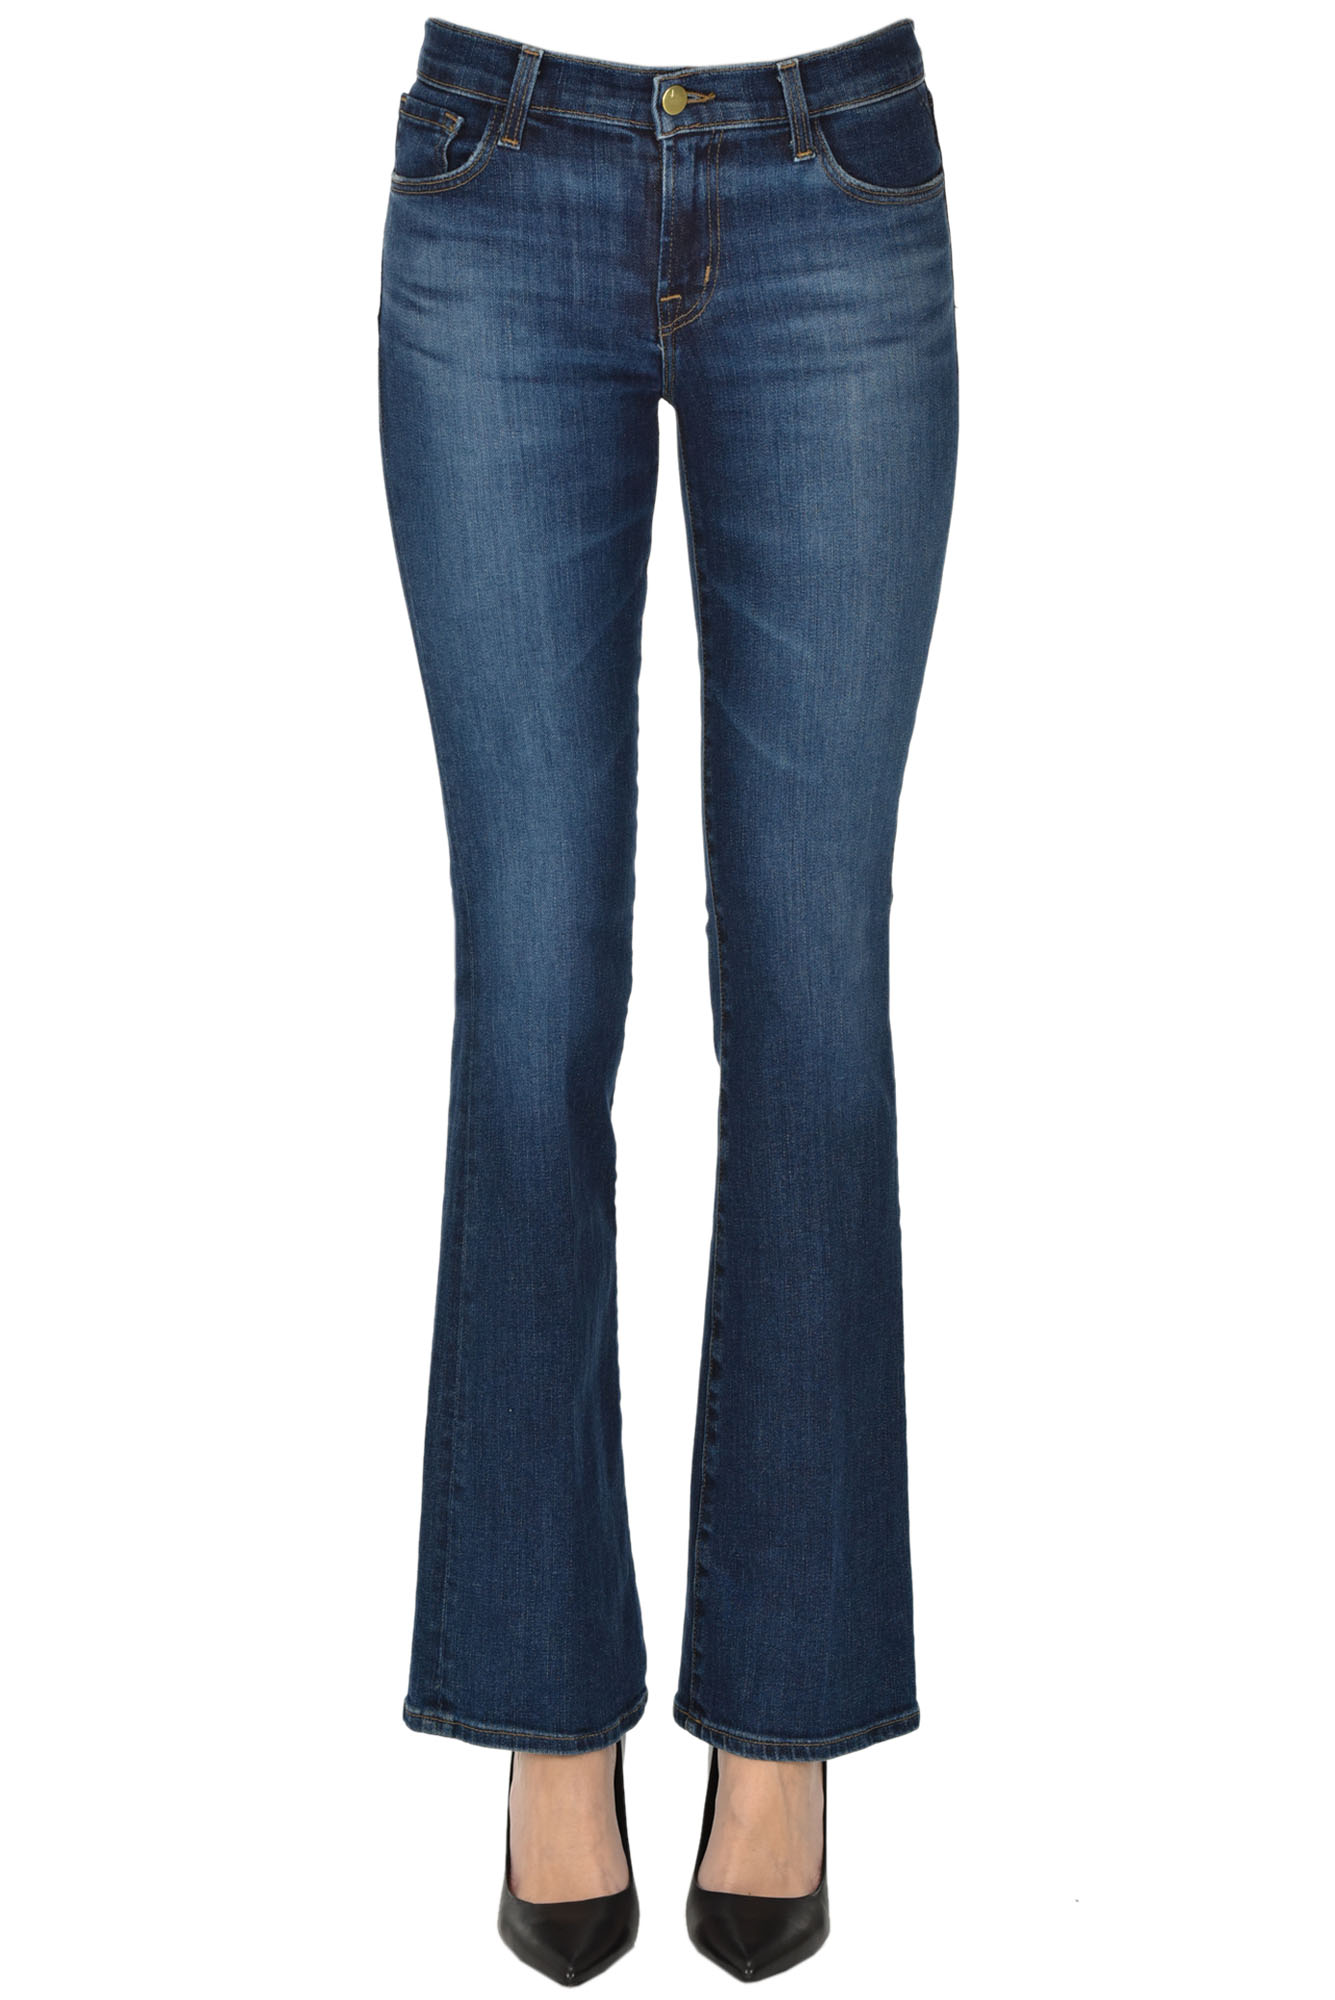 J Brand Sallie jeans - Buy online on Glamest Fashion Outlet - Glamest ...